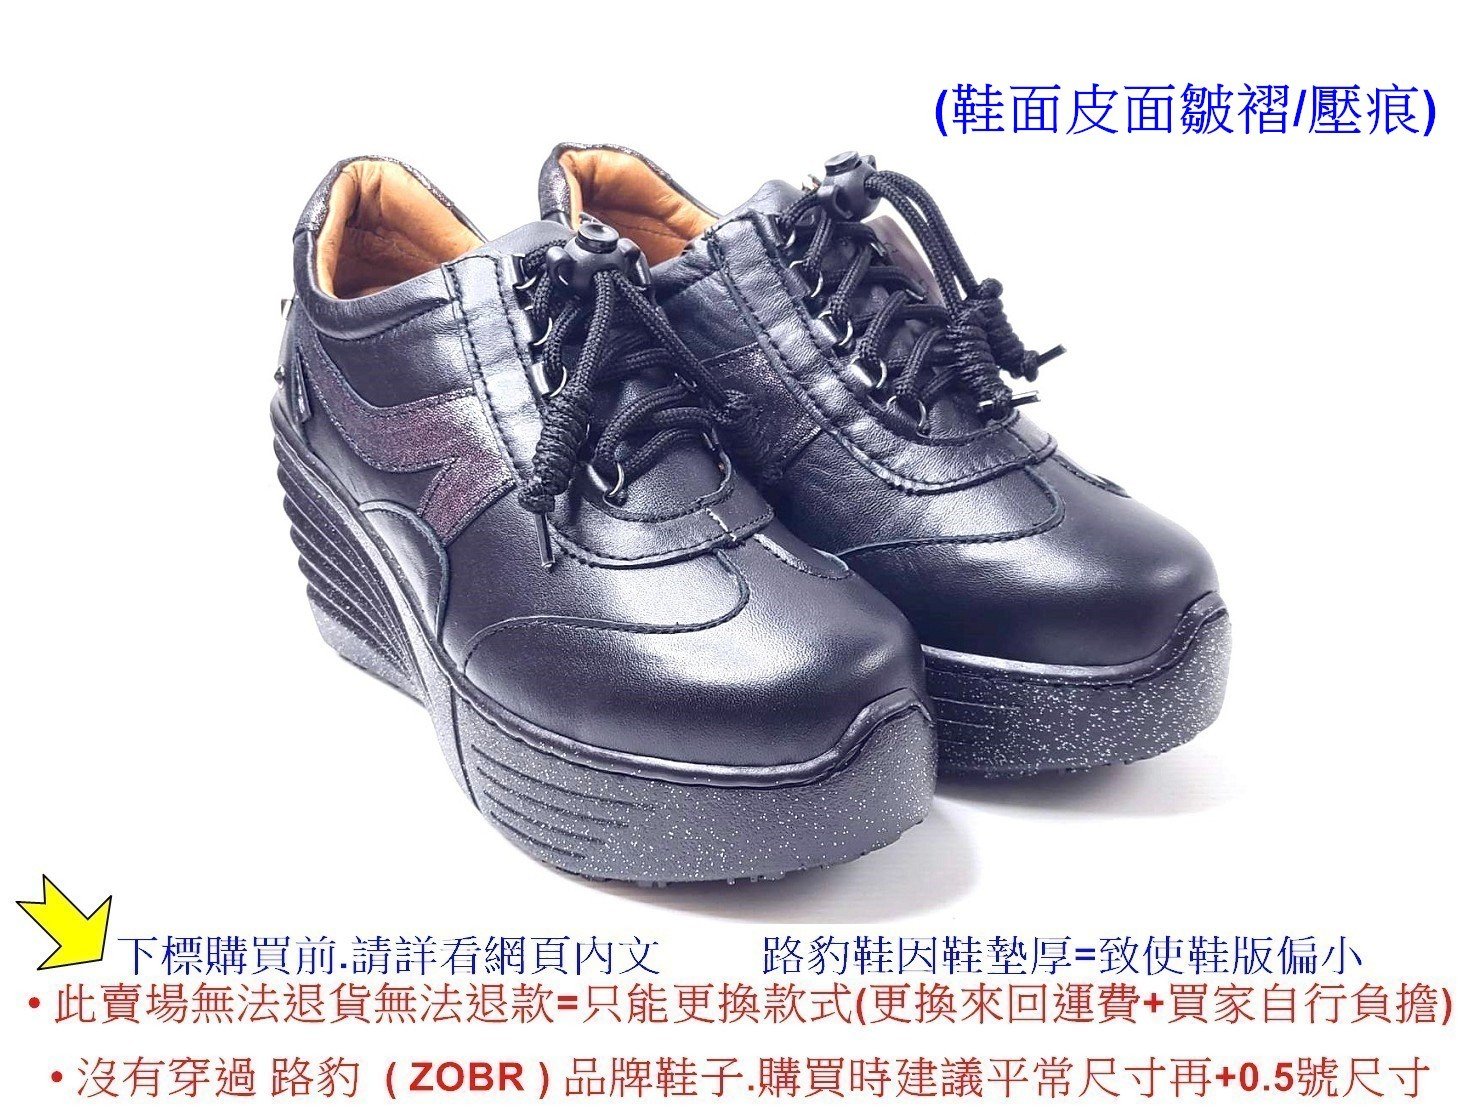 零碼鞋8號Zobr路豹牛皮氣墊厚底休閒鞋55707 黑銀色特價$1190元5系列鞋 